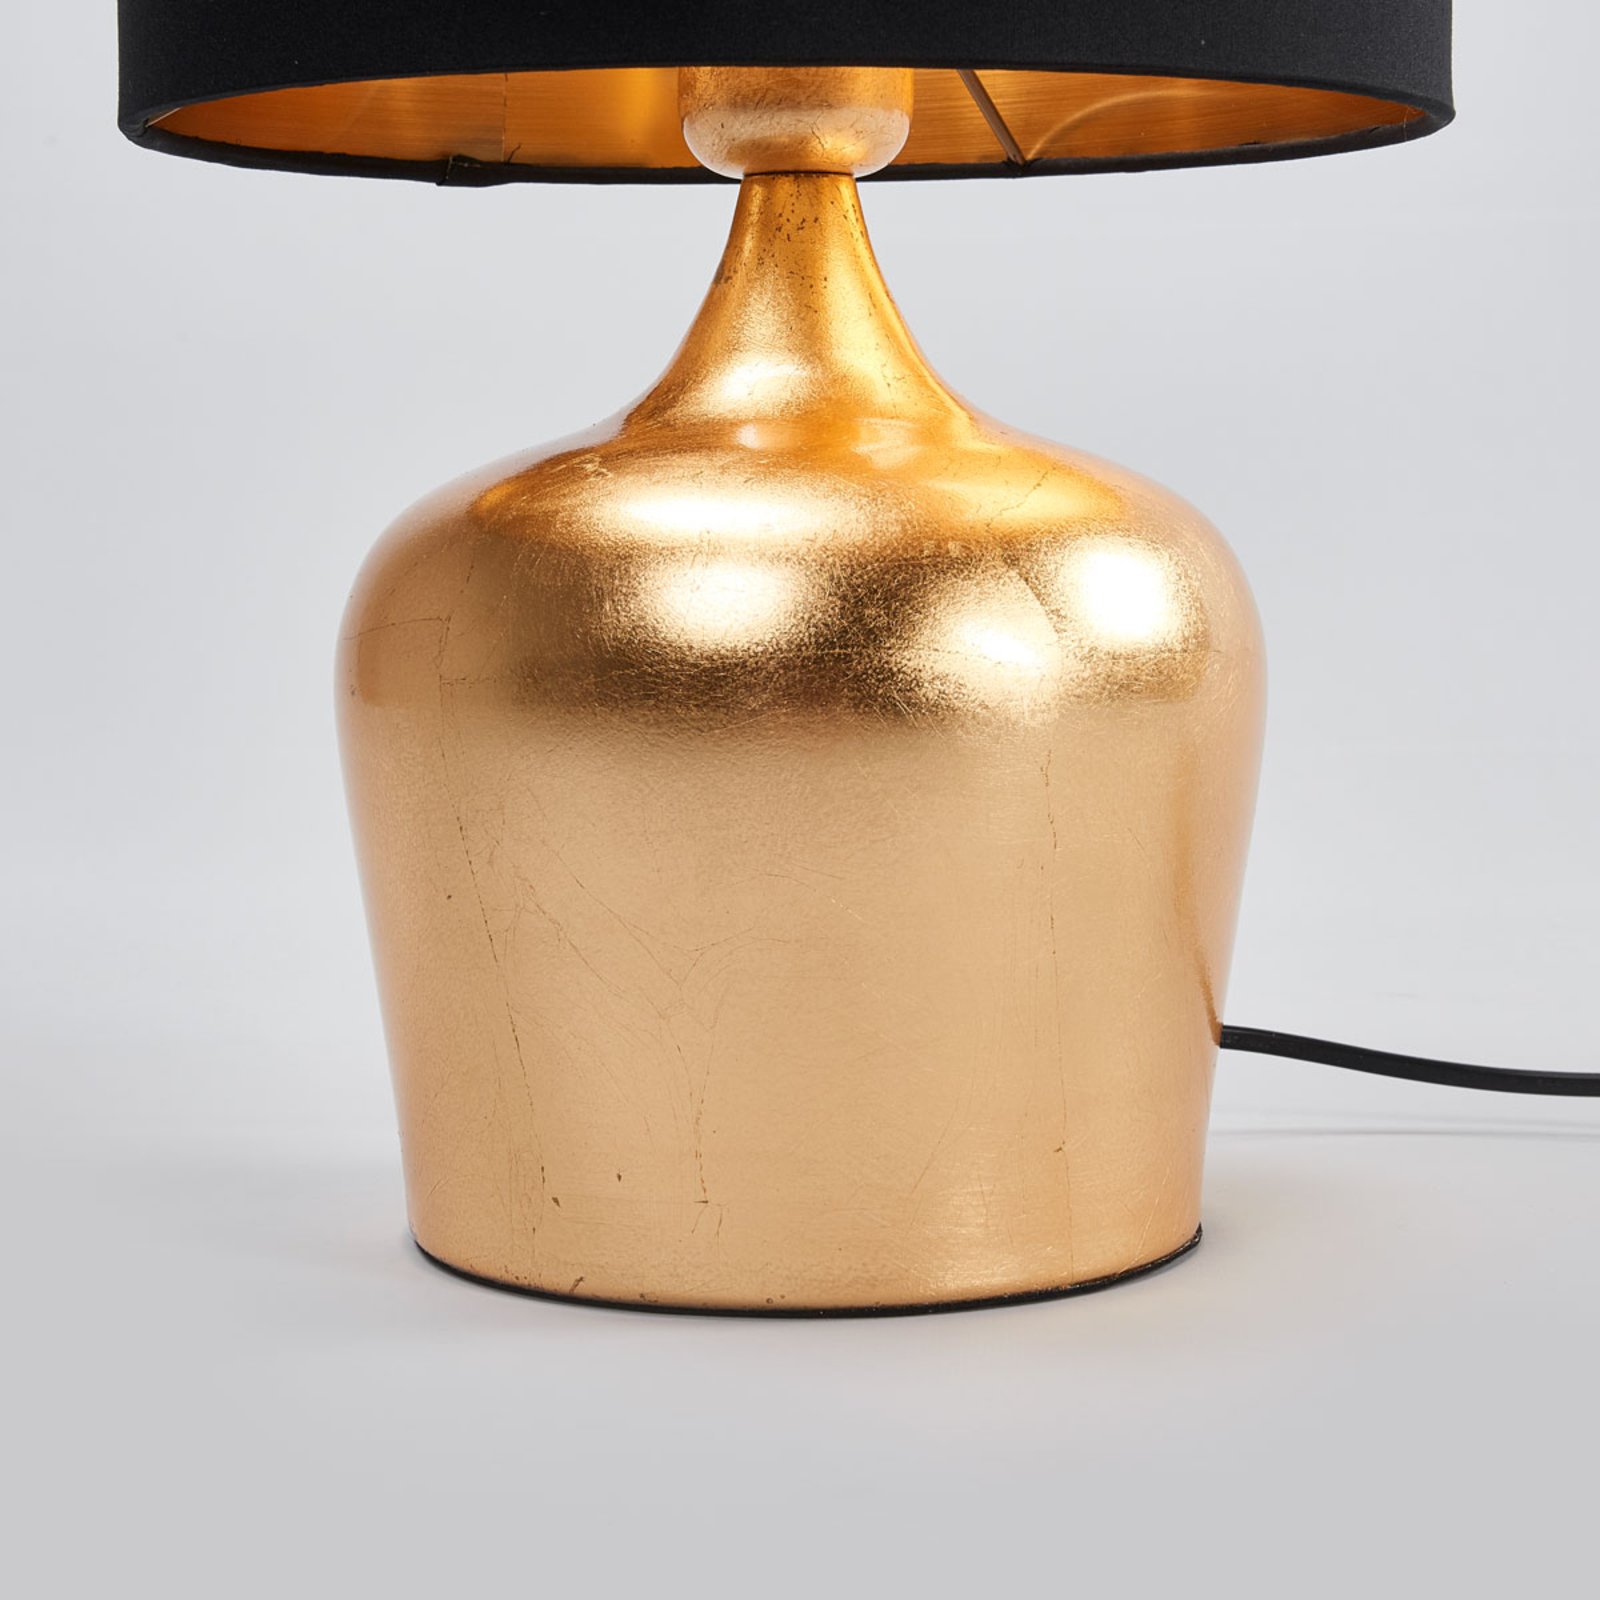 Manalba textil asztali lámpa, 38 cm magas